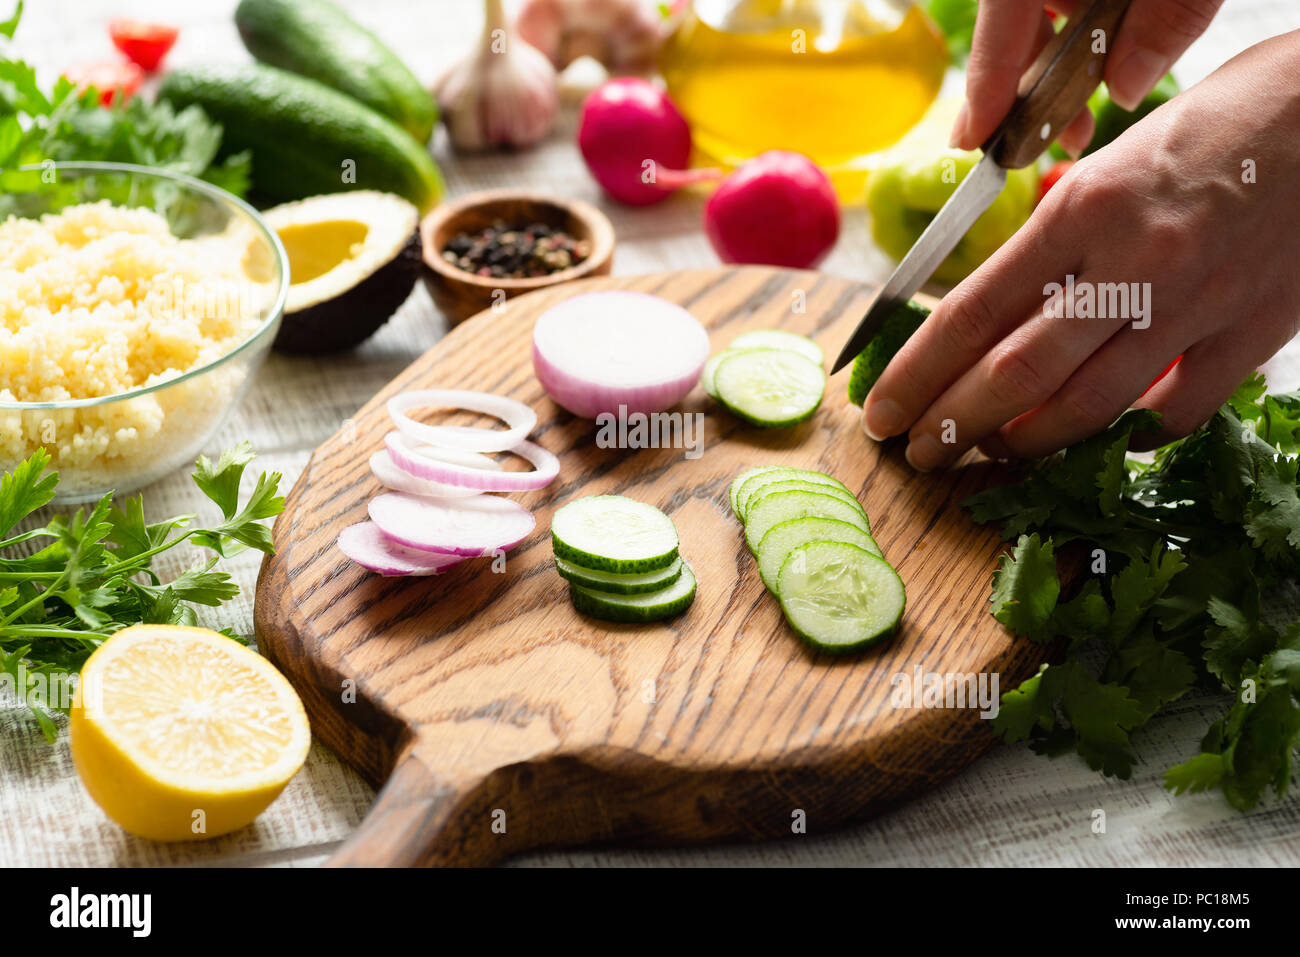 Coupe féminine des légumes frais pour la salade. Arrière-plan de cuisson. Préparation de la salade fraîche Banque D'Images